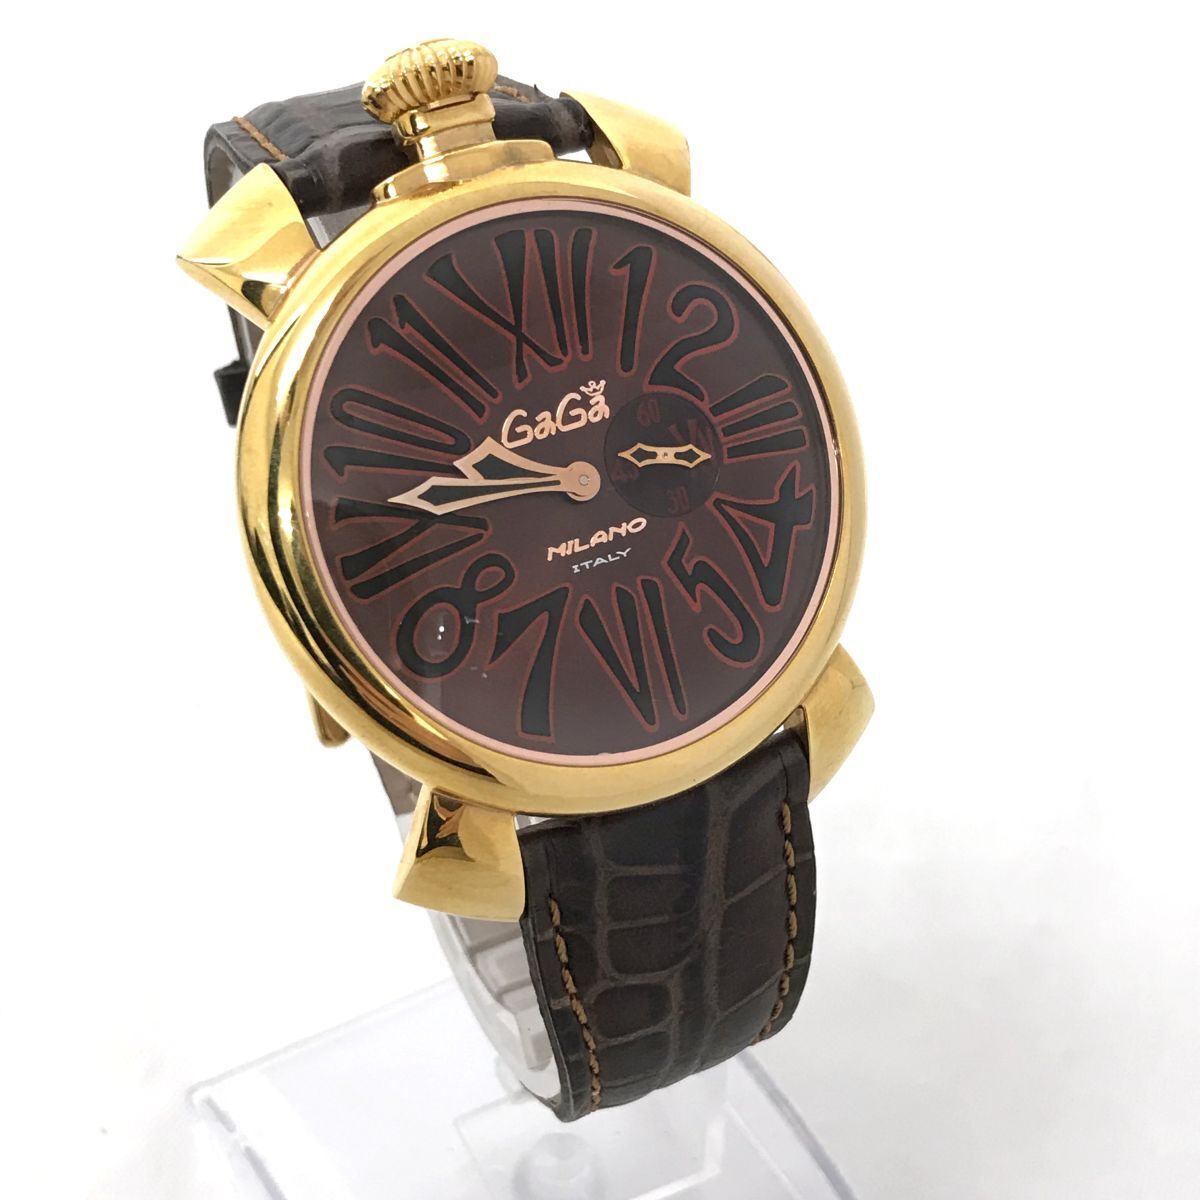 GaGaMILANO ガガミラノ MANUALE 46 マヌアーレ 腕時計 クオーツ アナログ ラウンド ゴールド コレクション おしゃれ レザー 動作確認済の画像3